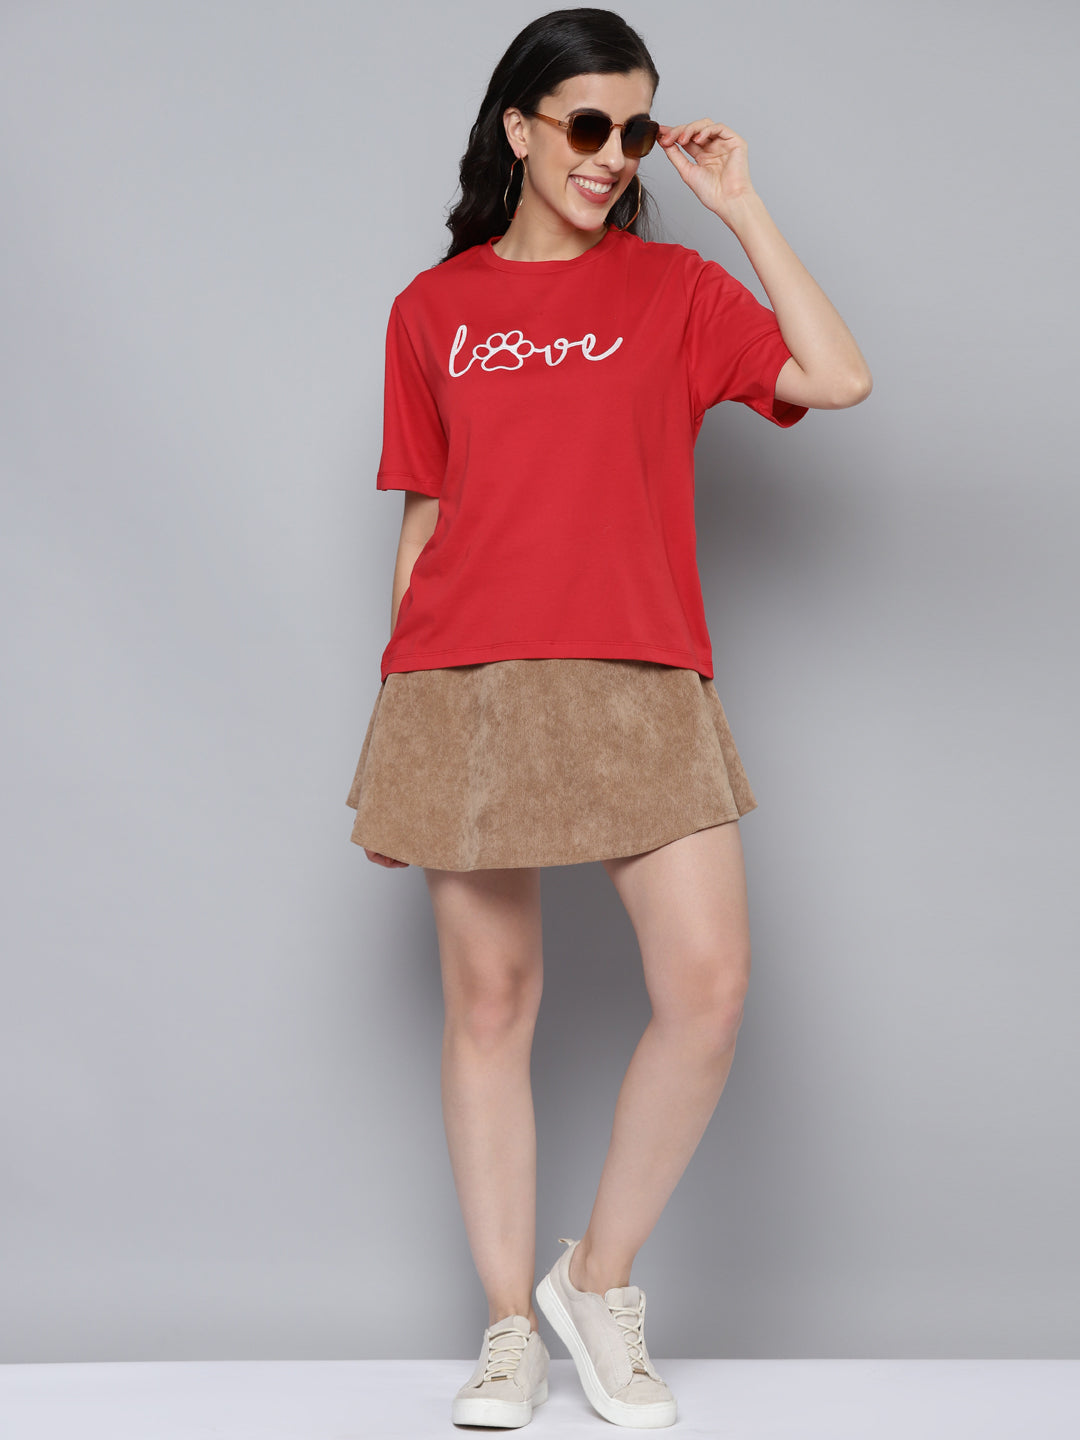 Women Red LOVE Embroidery Regular T-Shirt